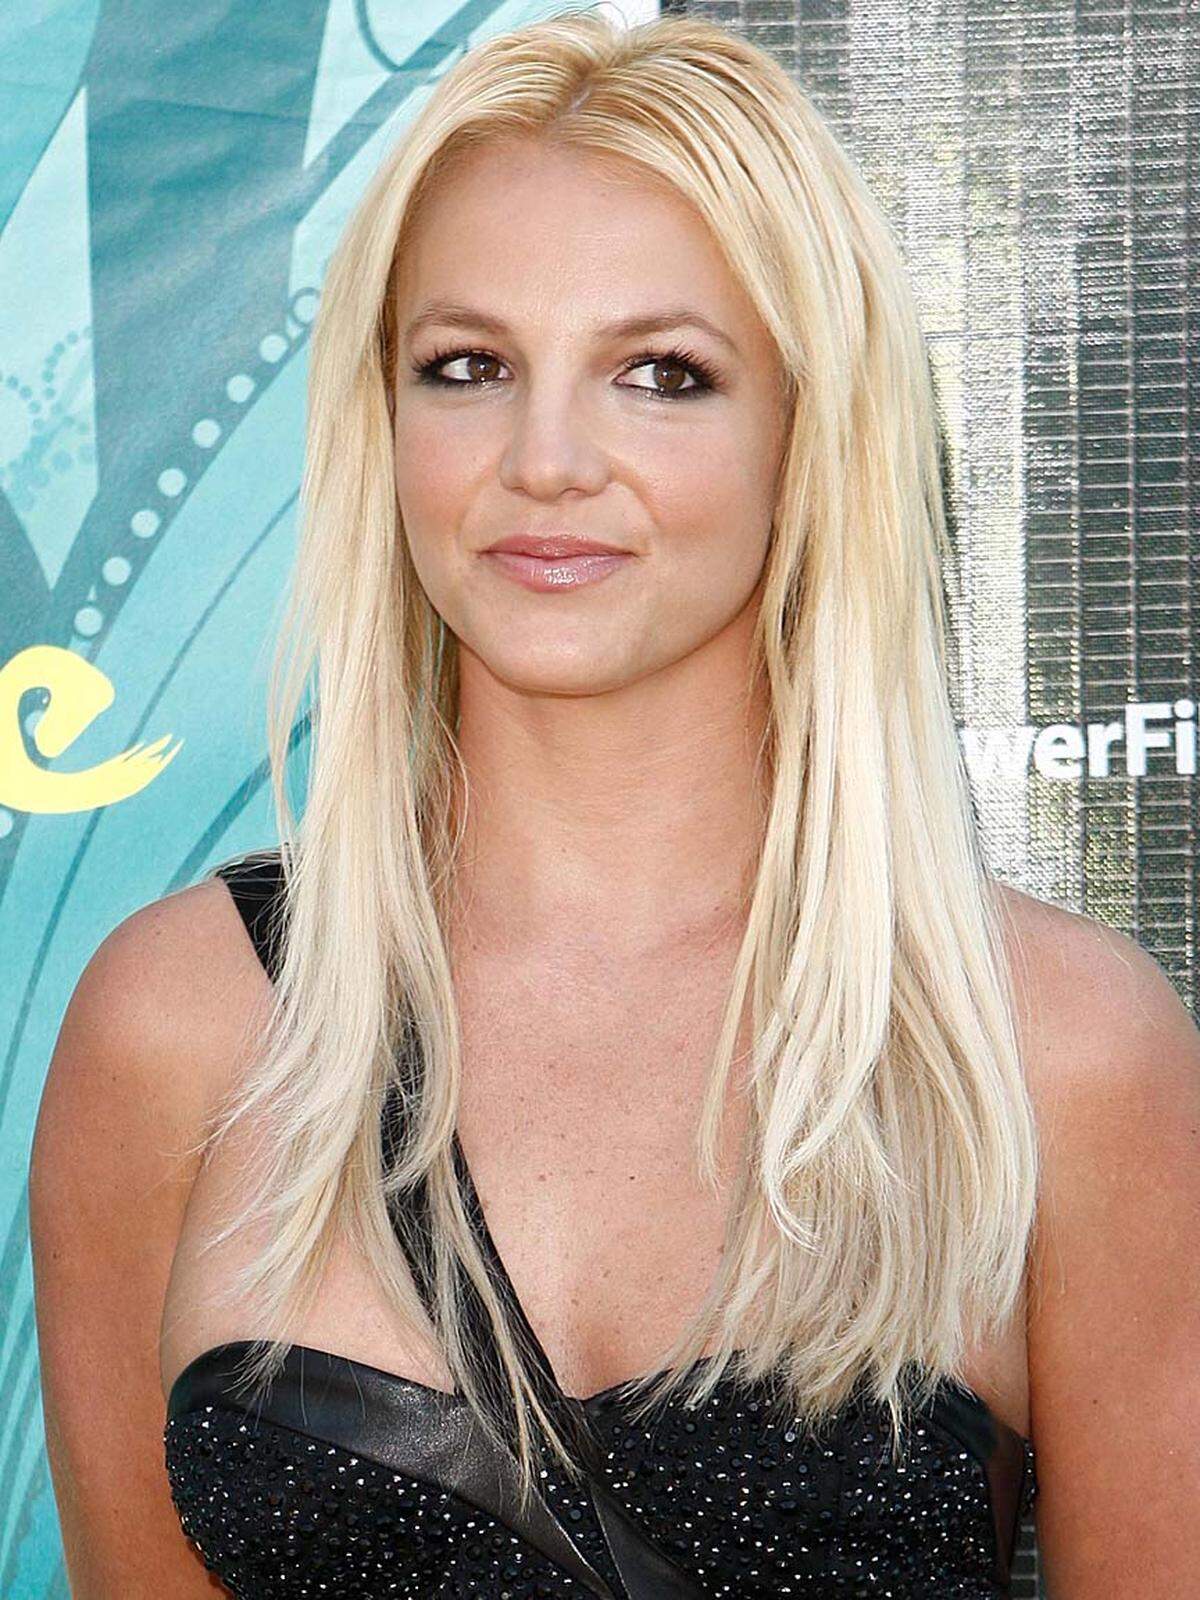 ... vor der ein Jahr jüngeren Britney Spears auf Rang drei (64 Millionen Dollar).